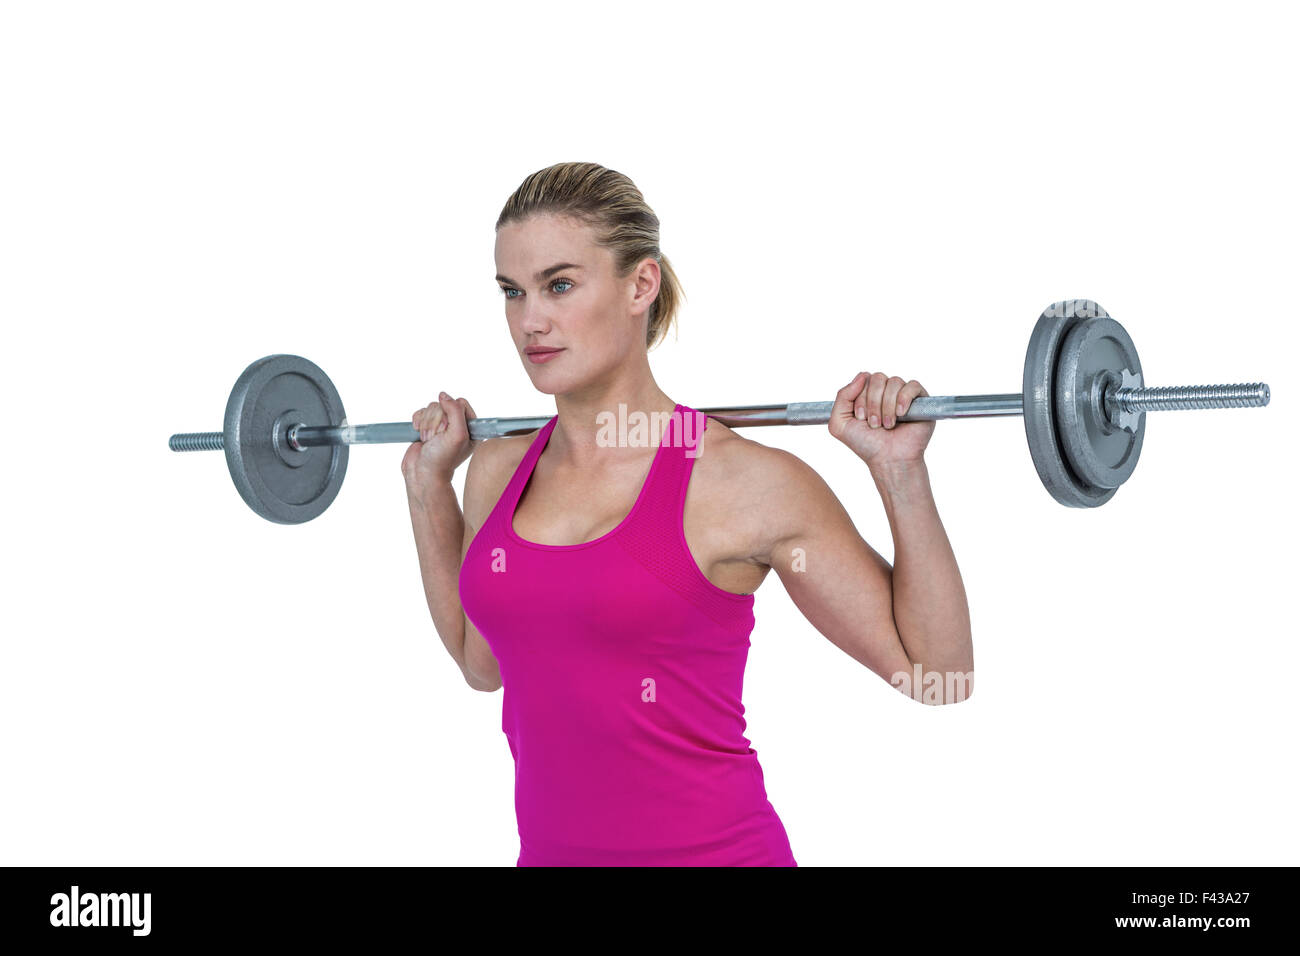 Sporty female bodybuilder lifting barebell Stock Photo